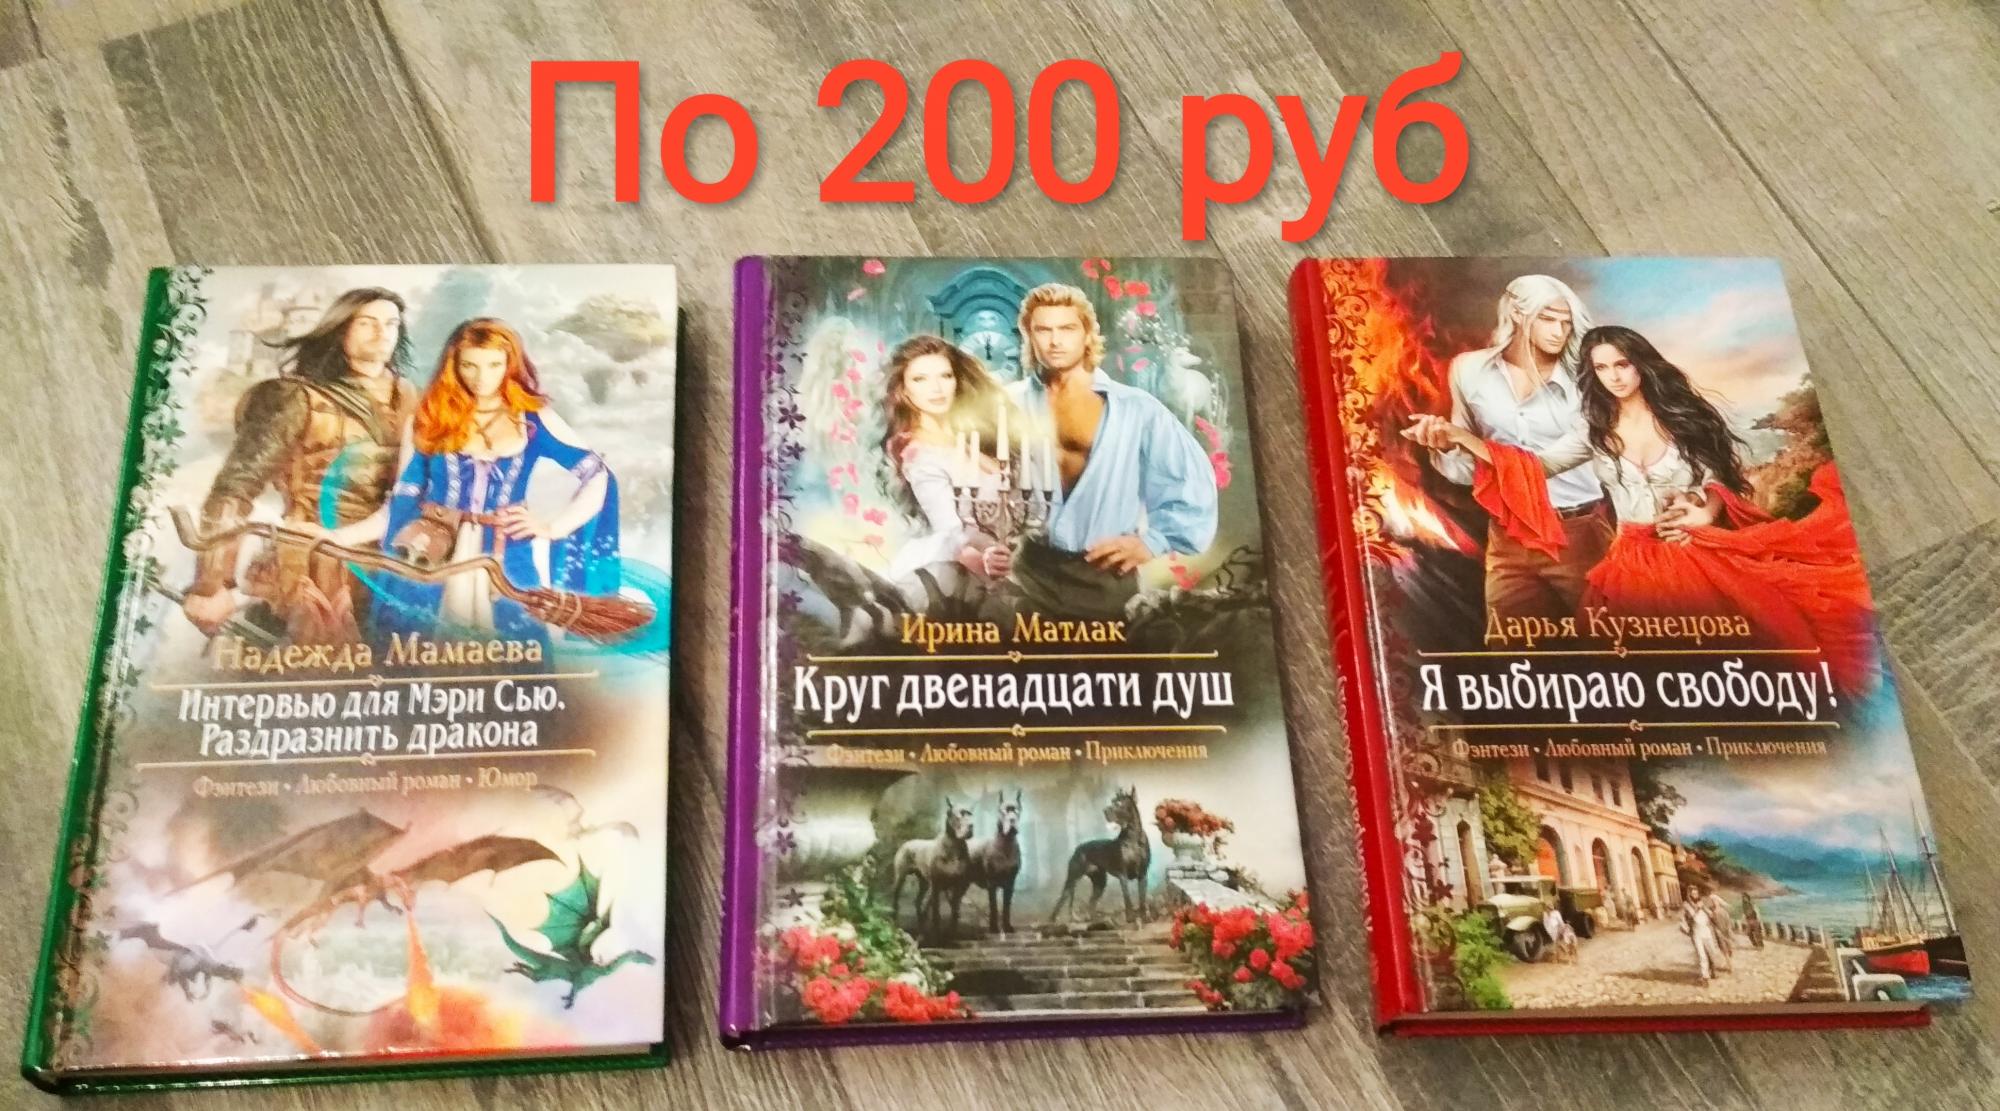 Книги фэнтези в Лесном Городке 89636361684 купить 3